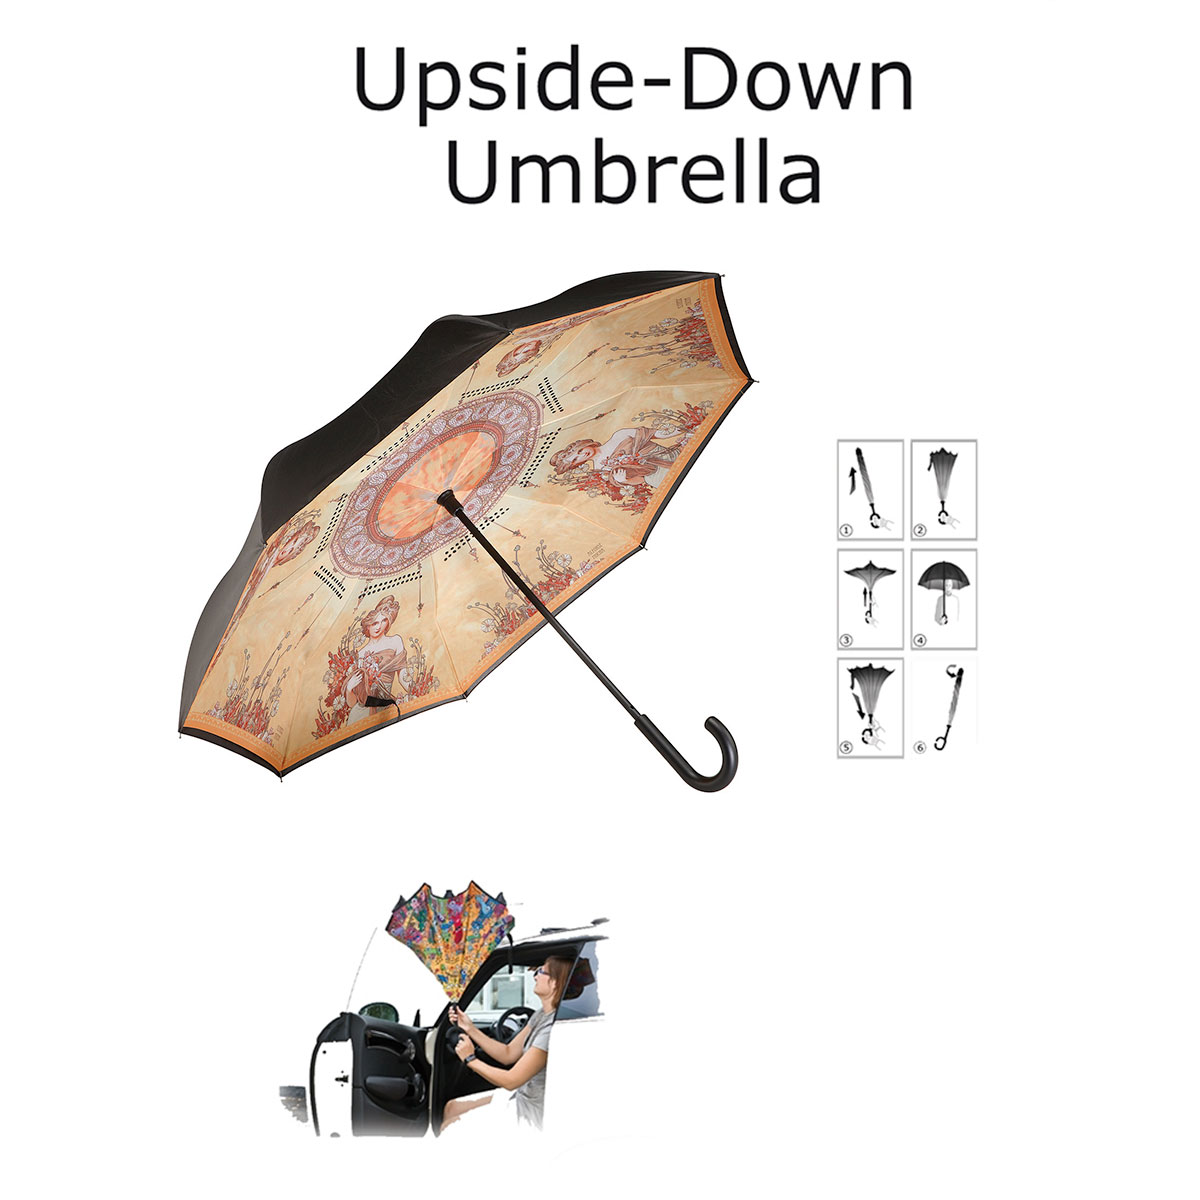 Paraguas Alfons Mucha : La primavera